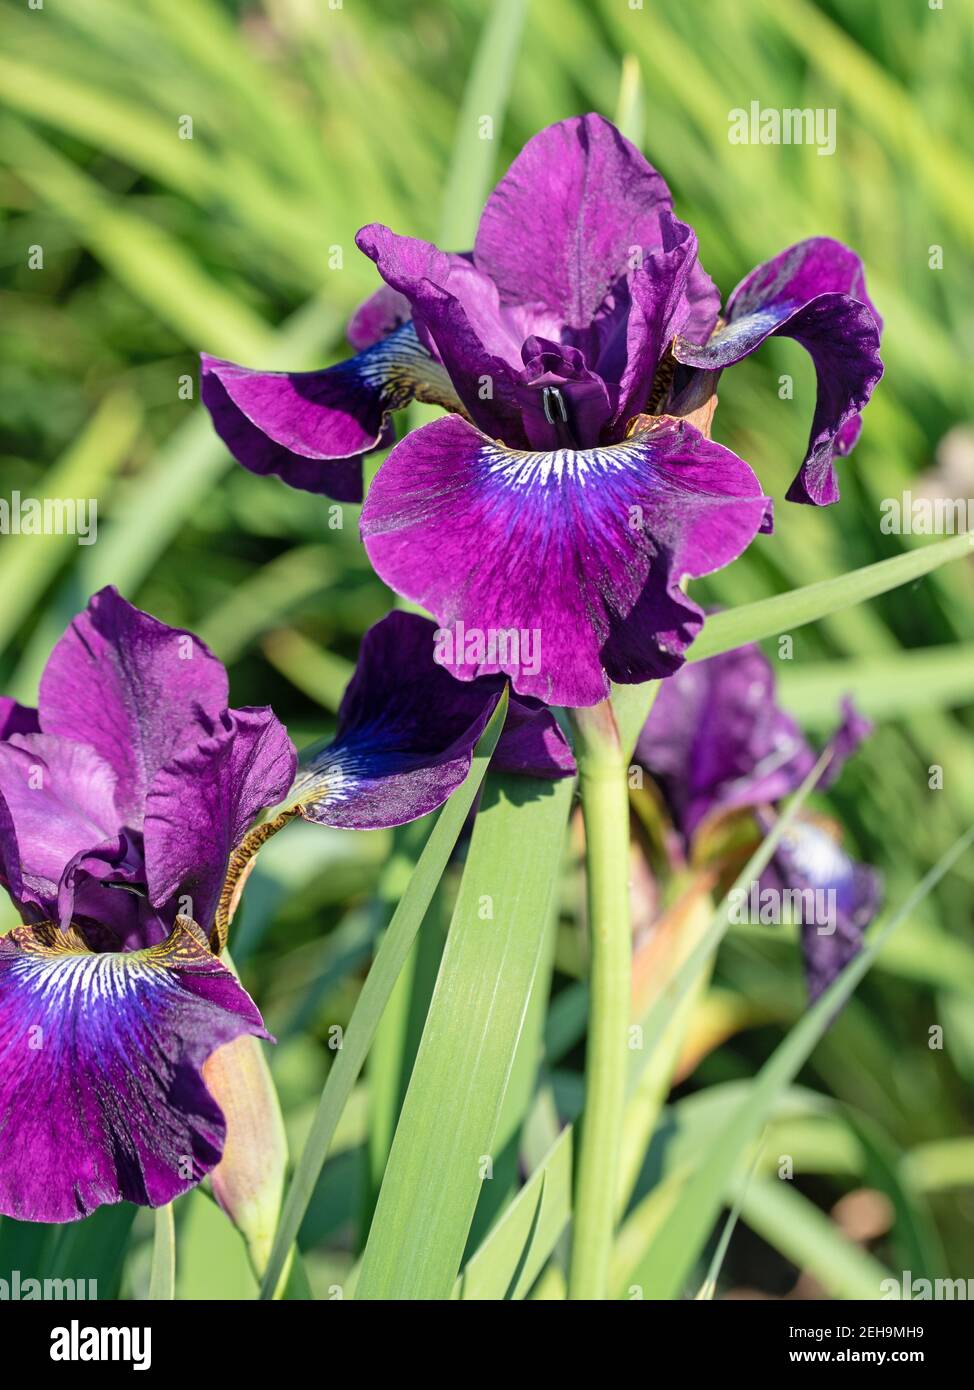 Blooming irises, iris, close-up Stock Photo